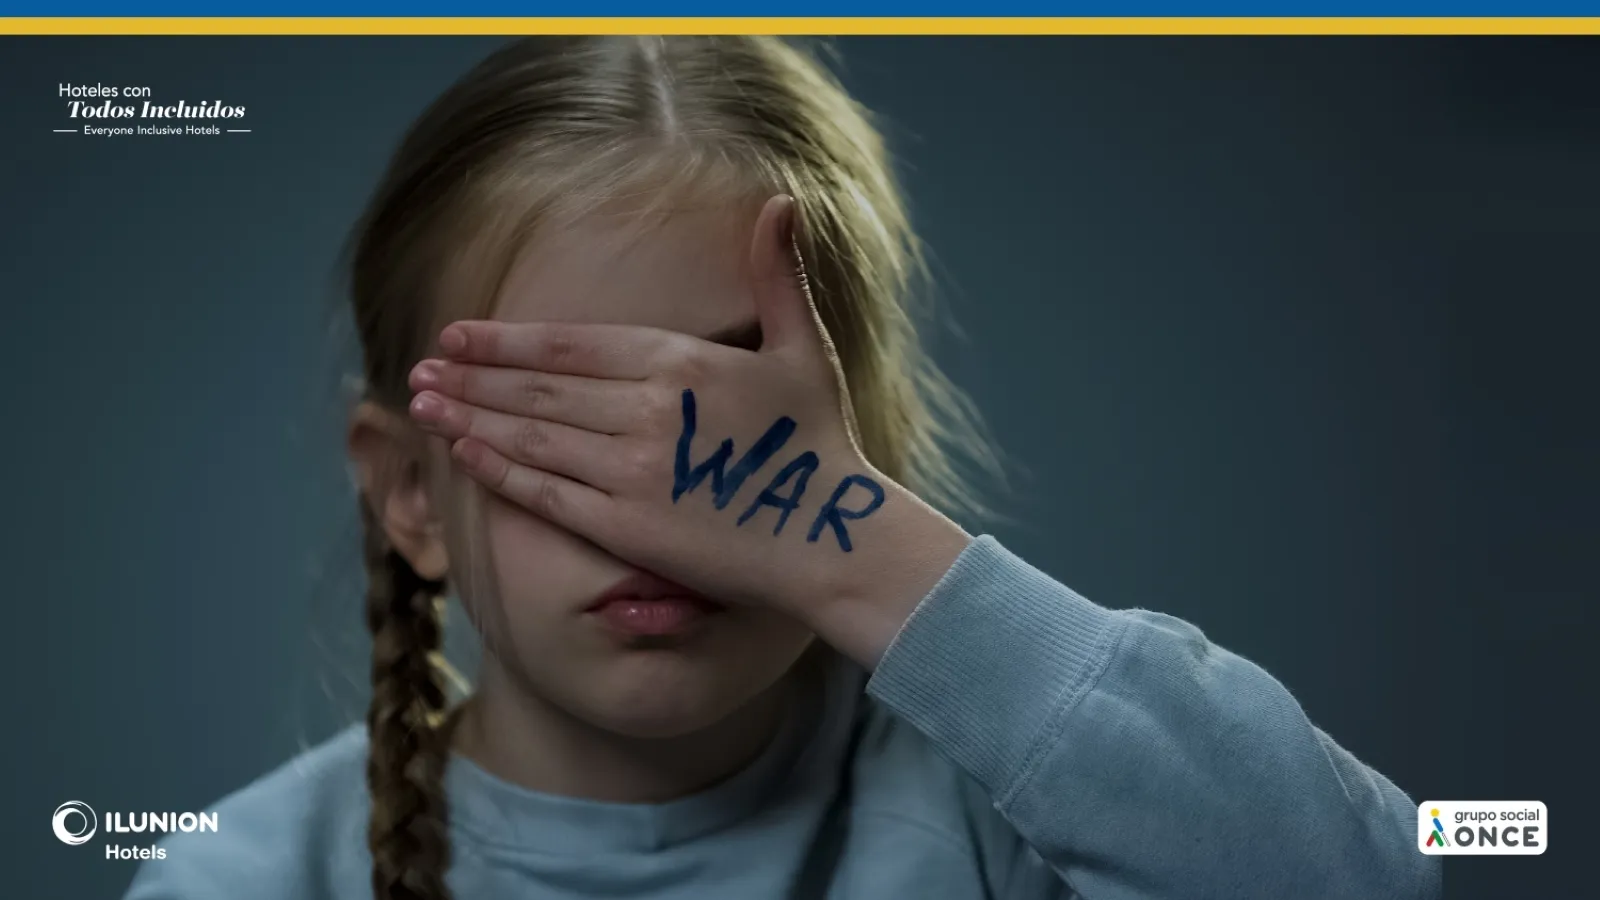 Imagen de una niña tapándose los ojos. En la palma de su mano está escrita a bolígrafo la palabra war. aparecen los logotipos de ILUNION Hotels y Grupo Social ONCE